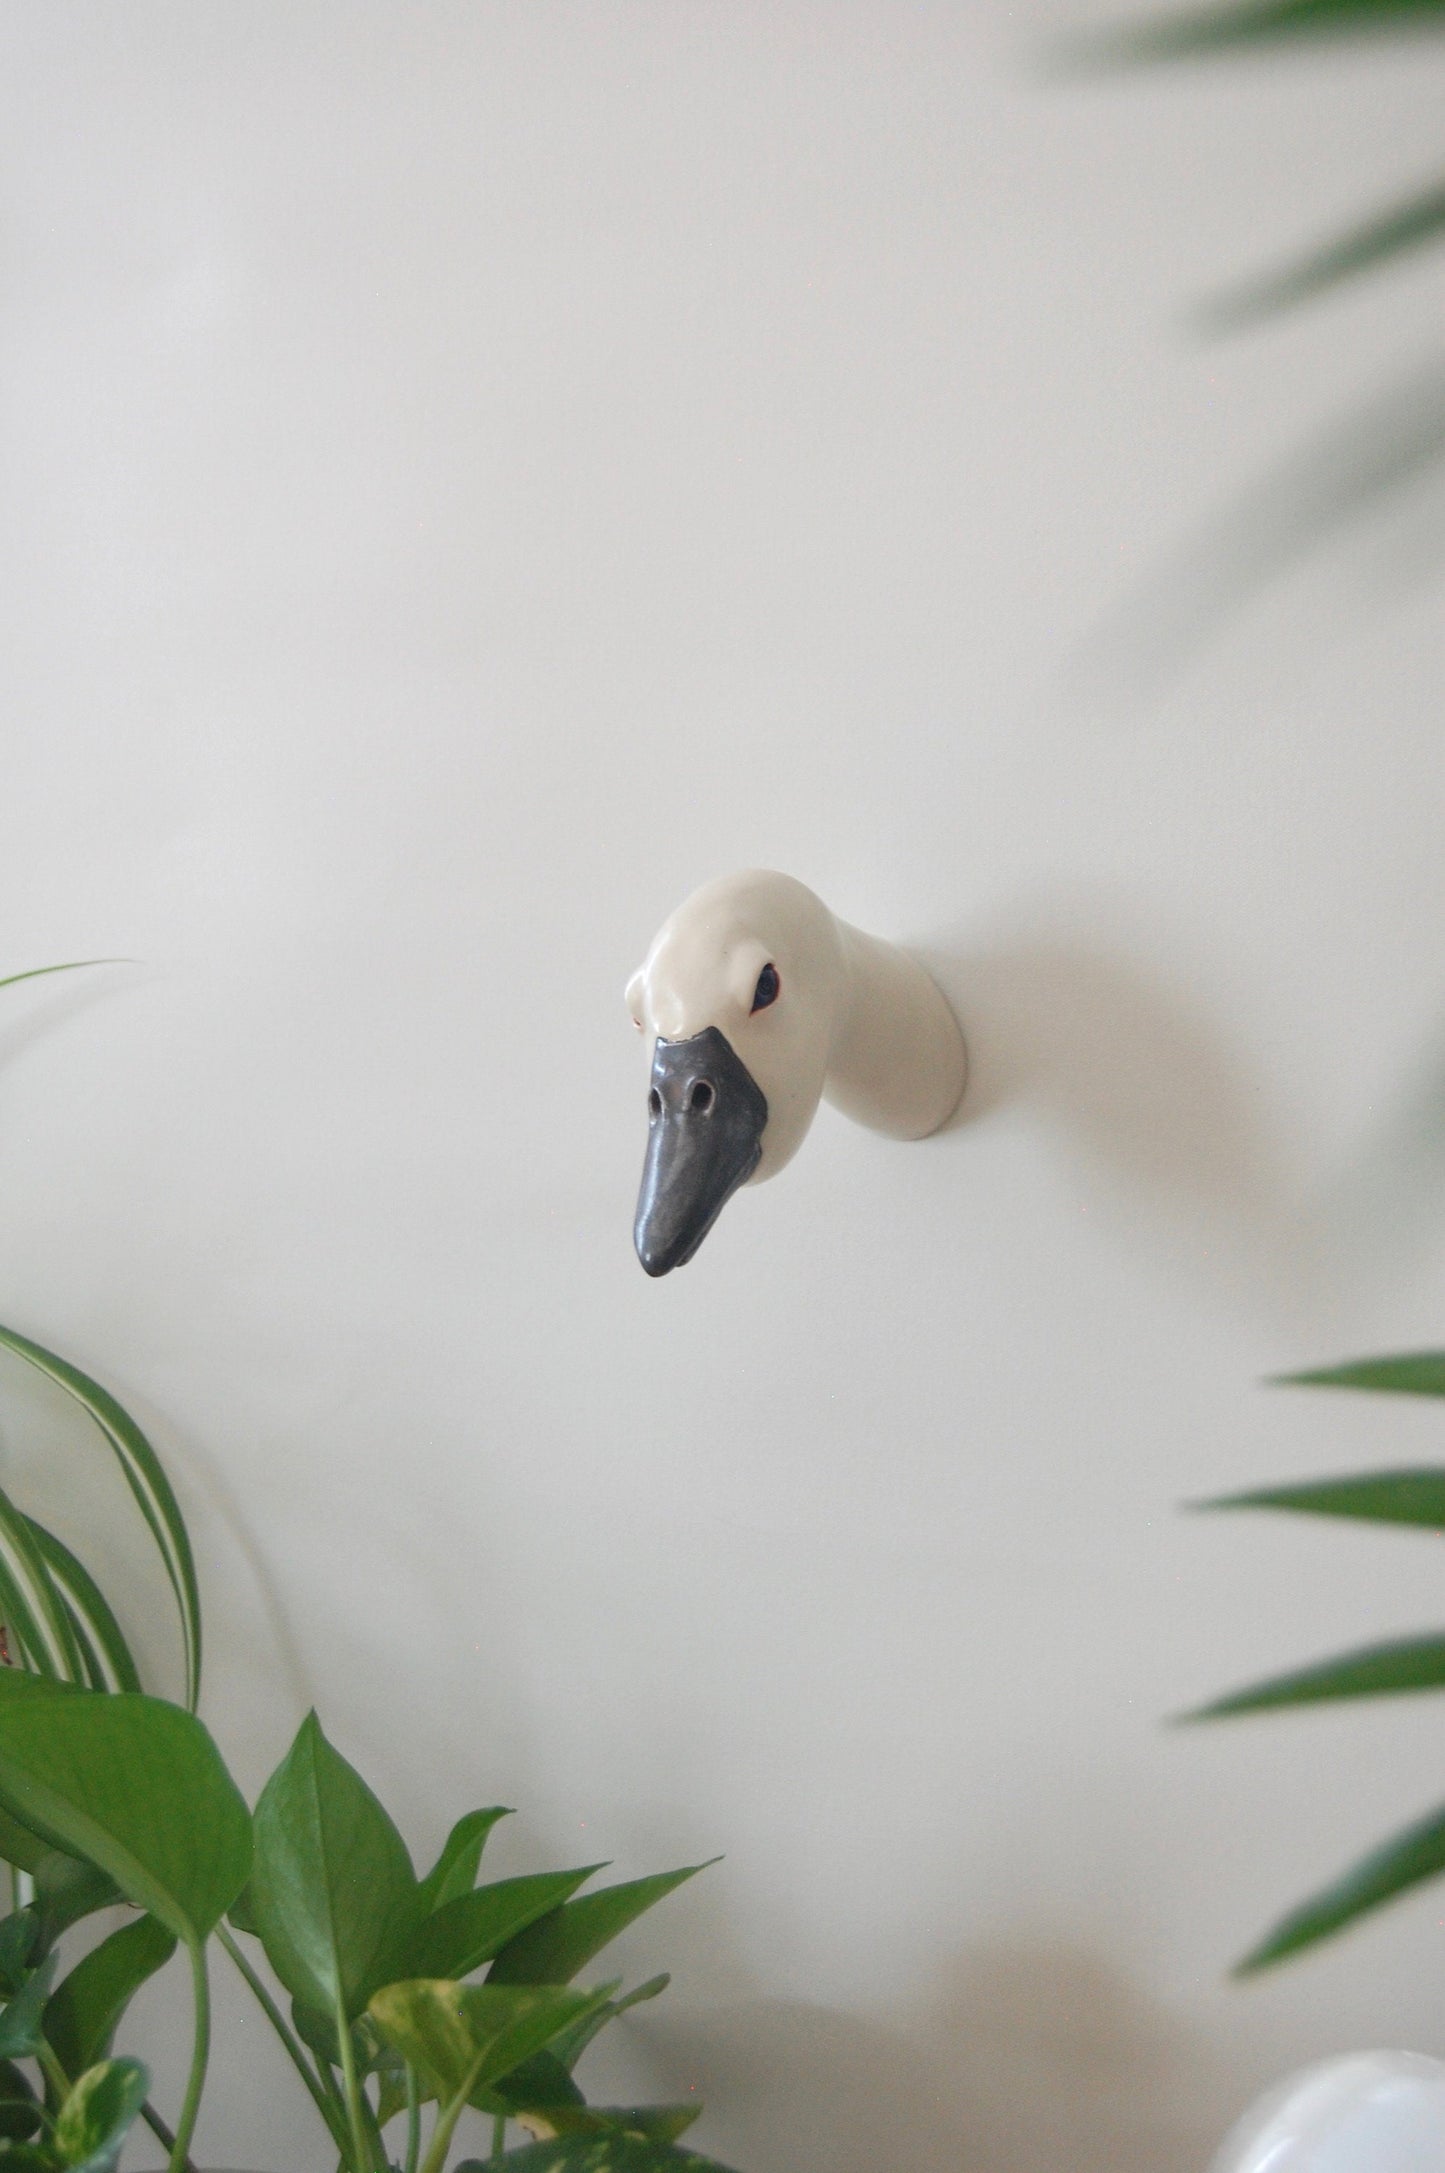 Bird Head Sculpture: Wren